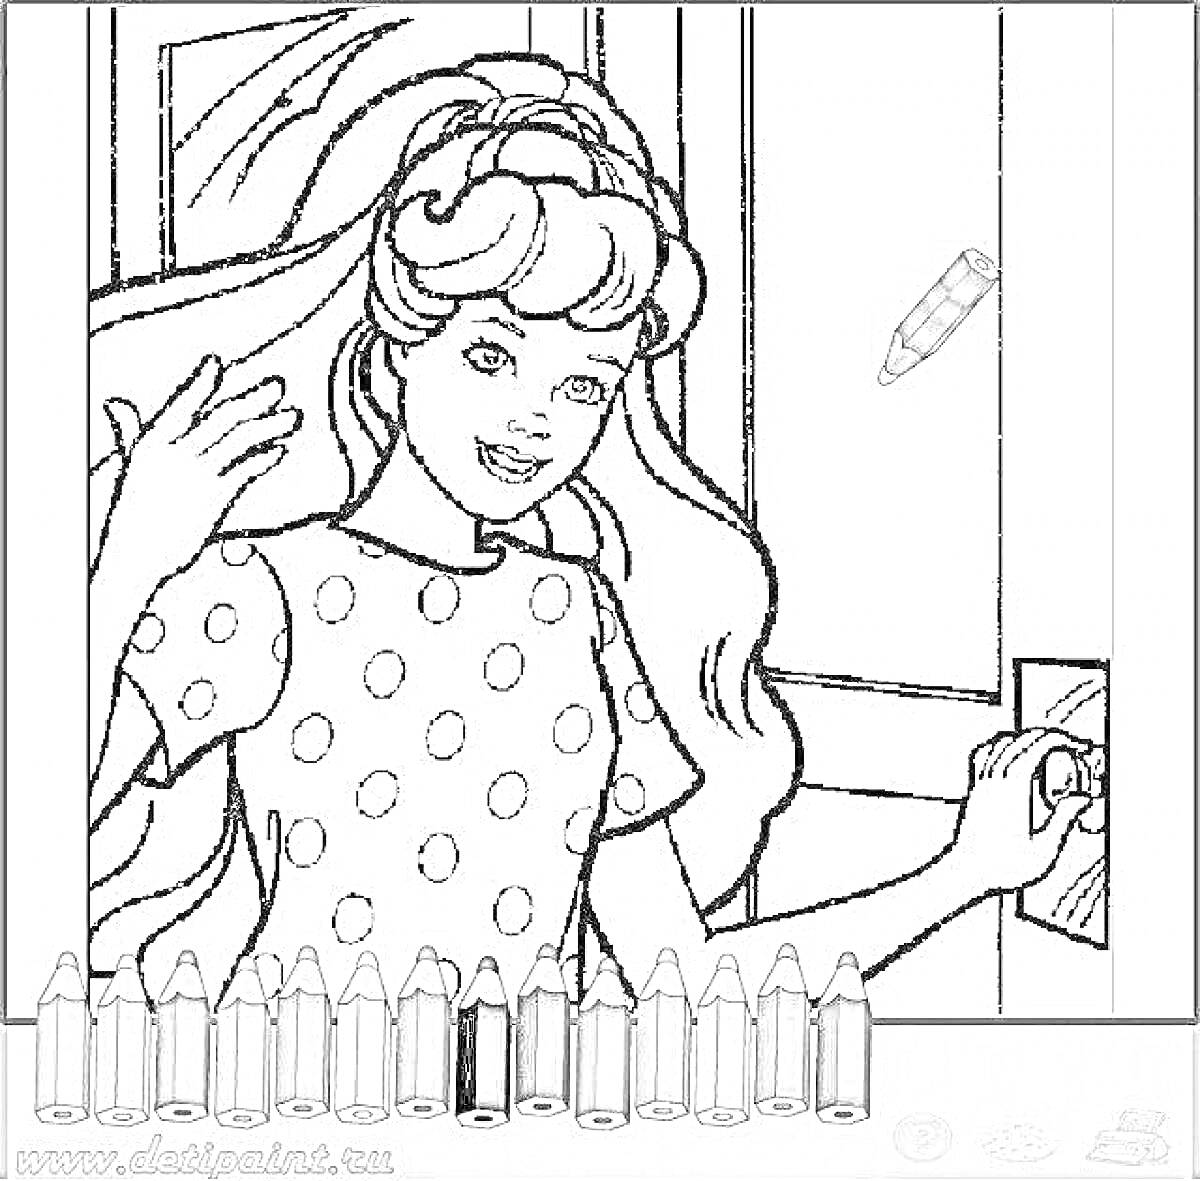 Раскраска Девочка с длинными волосами стоит у двери и улыбается, на ней футболка в горошек, рядом карандаши и карандаш для раскрашивания